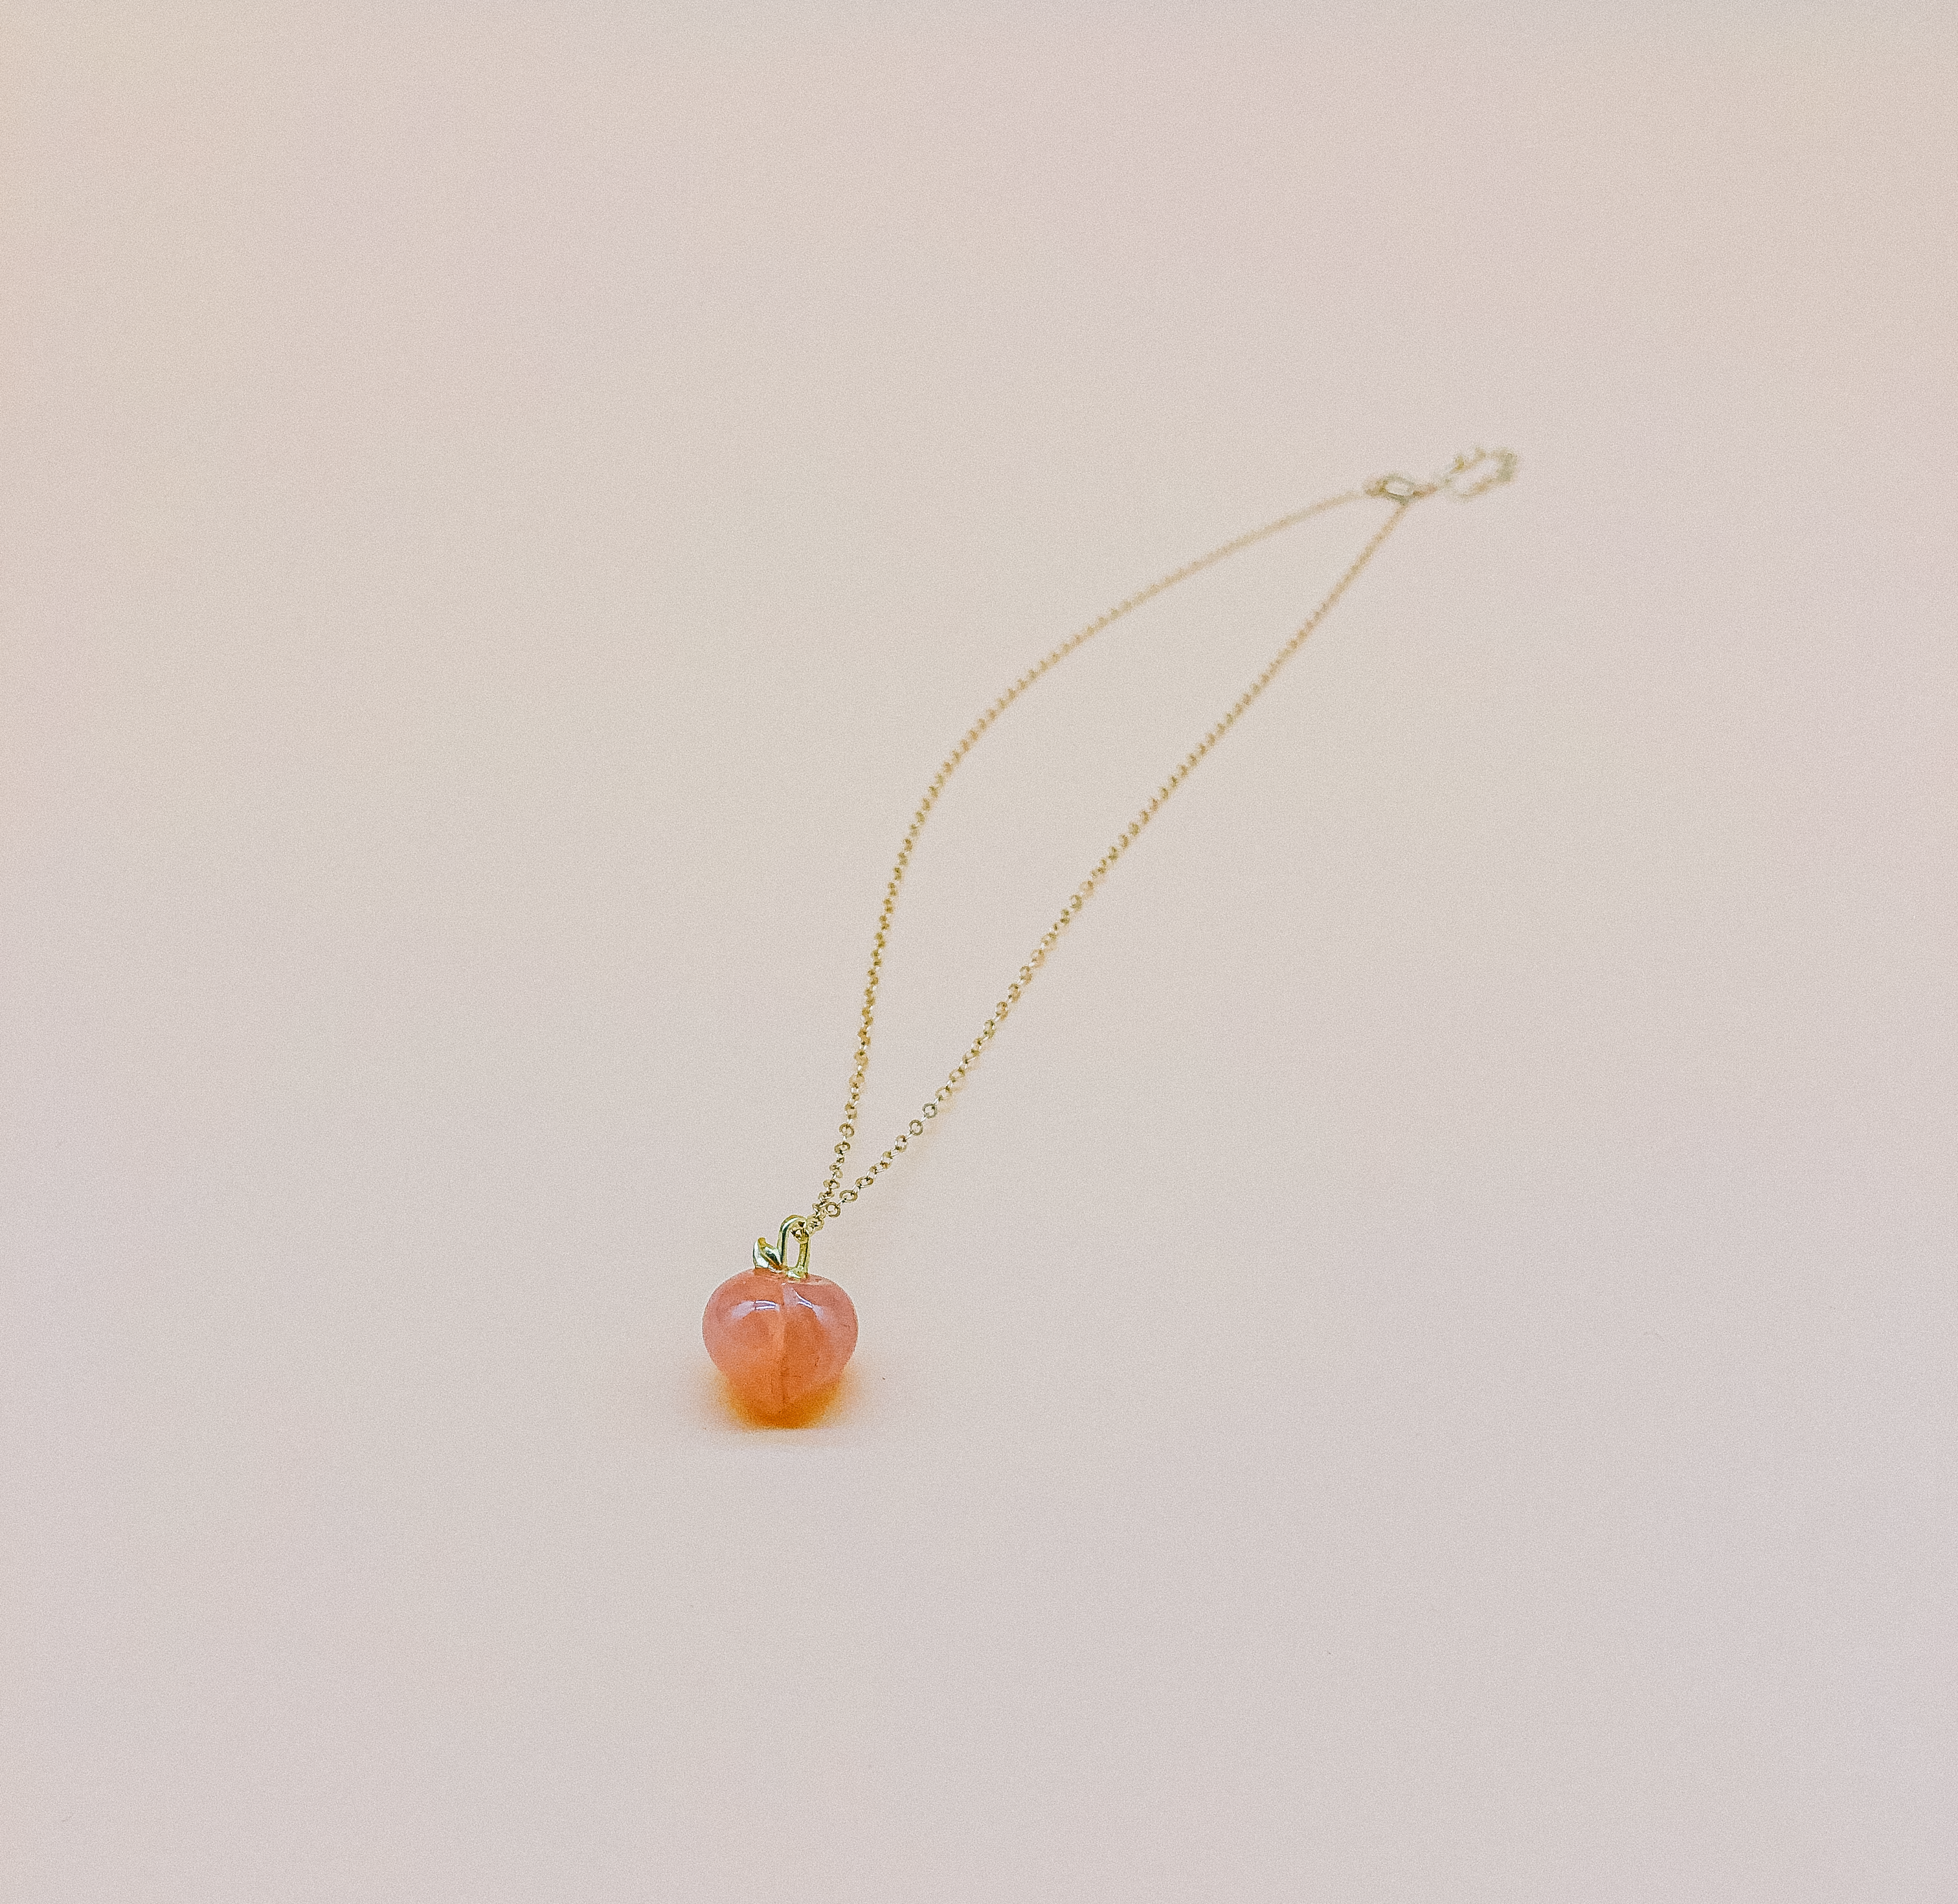 Peach Quartz Necklace by Veronique